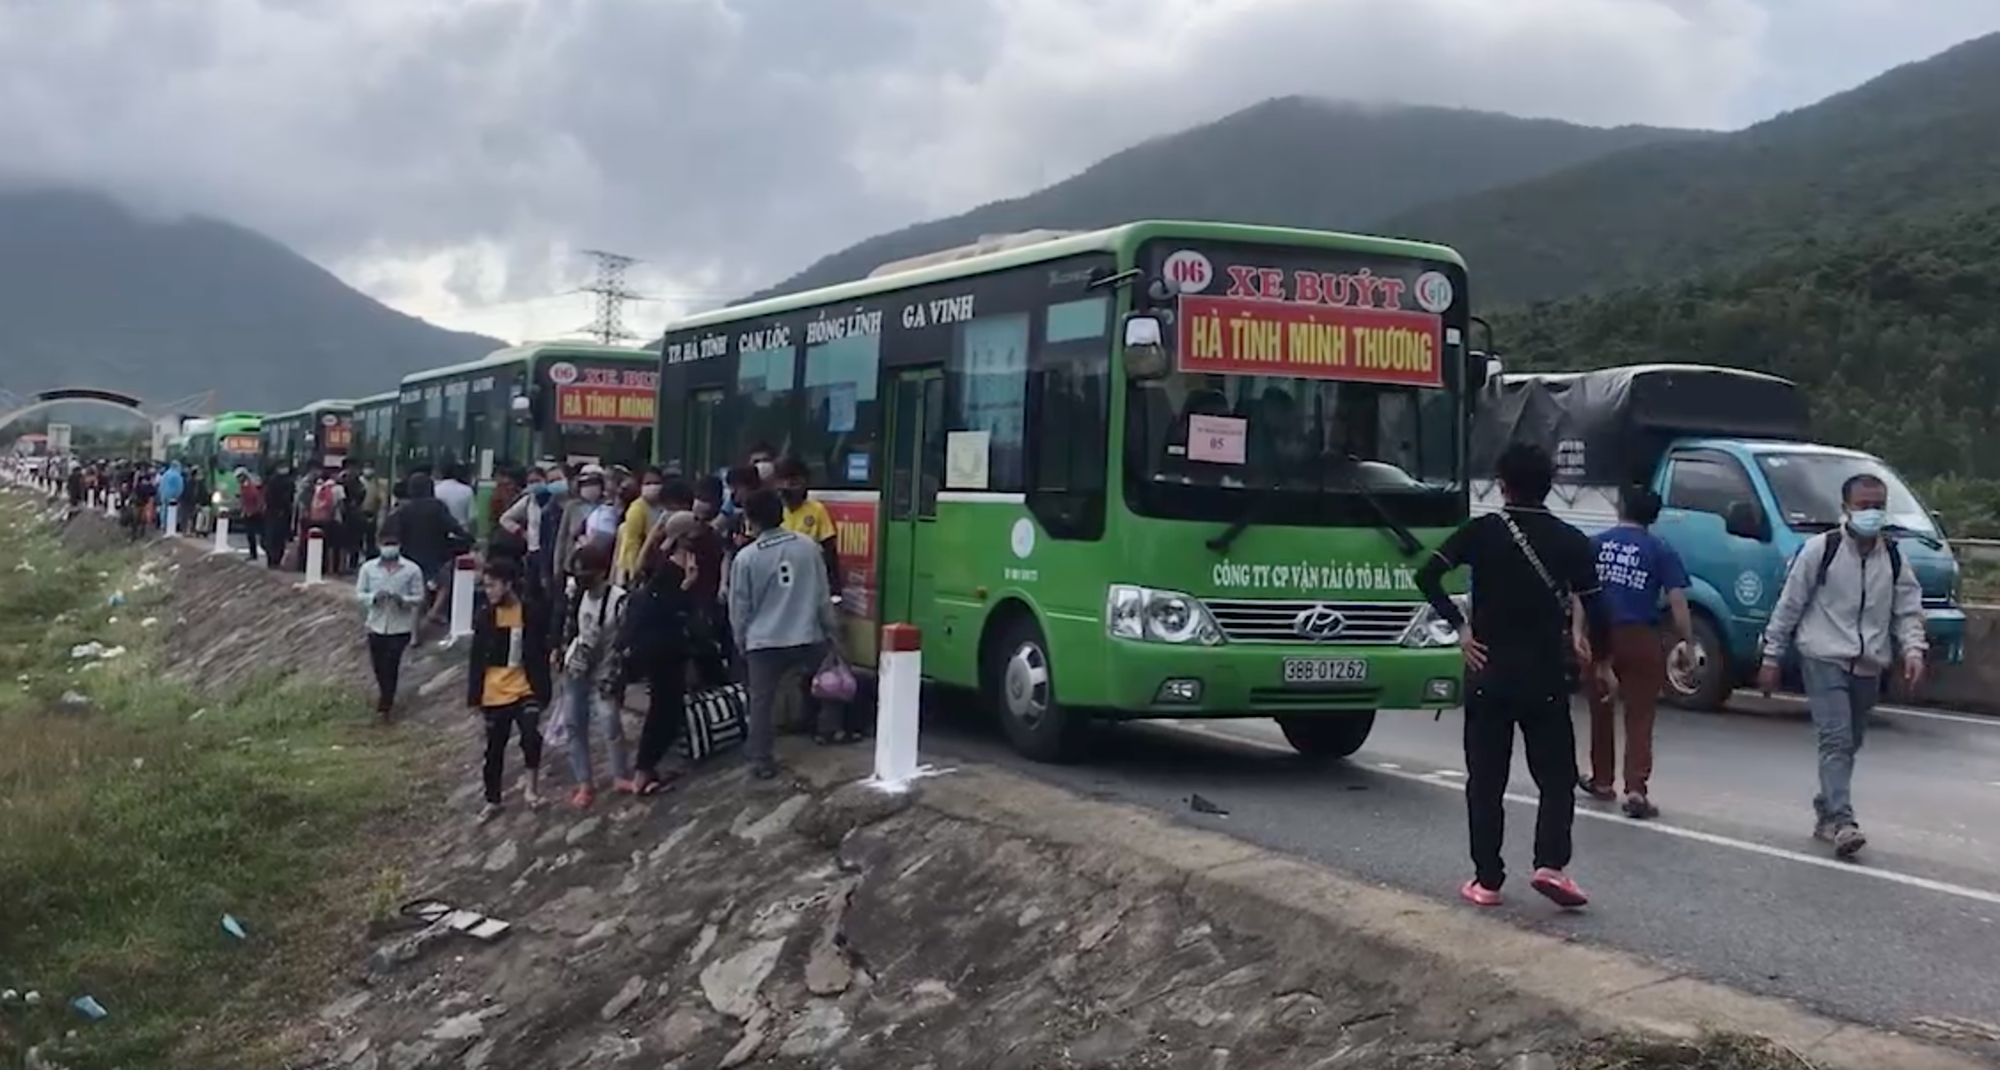 Huy động xe khách chở 400 người đi bộ từ các tỉnh phía Nam về quê - Ảnh 5.